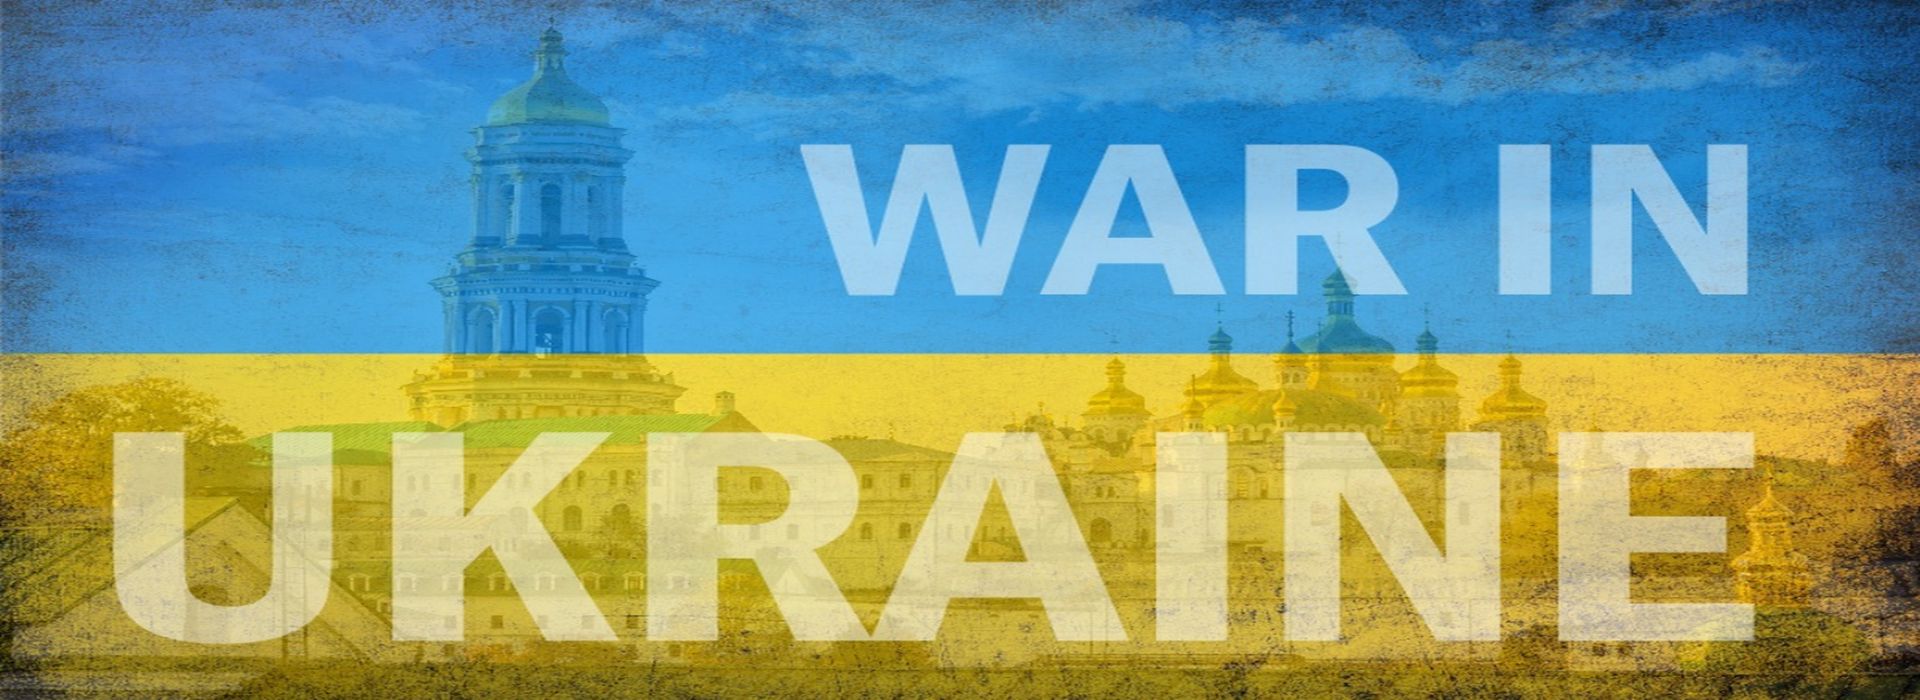 Ukraine at War Update 11